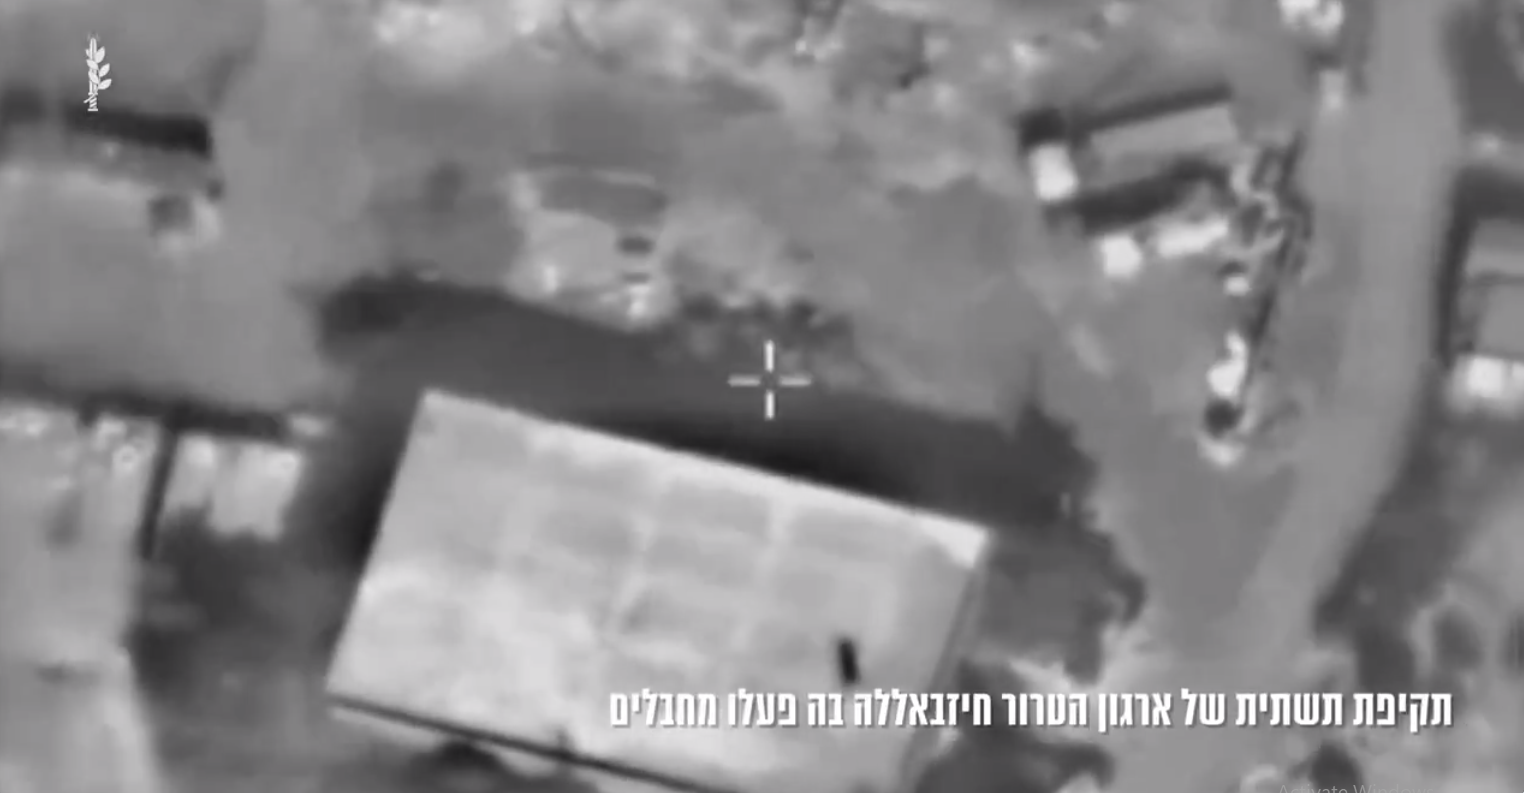 الجيش الإسرائيلي يعلن استهداف منشأة جوية لحزب الله في النجارية ويحذر اللبنانيين